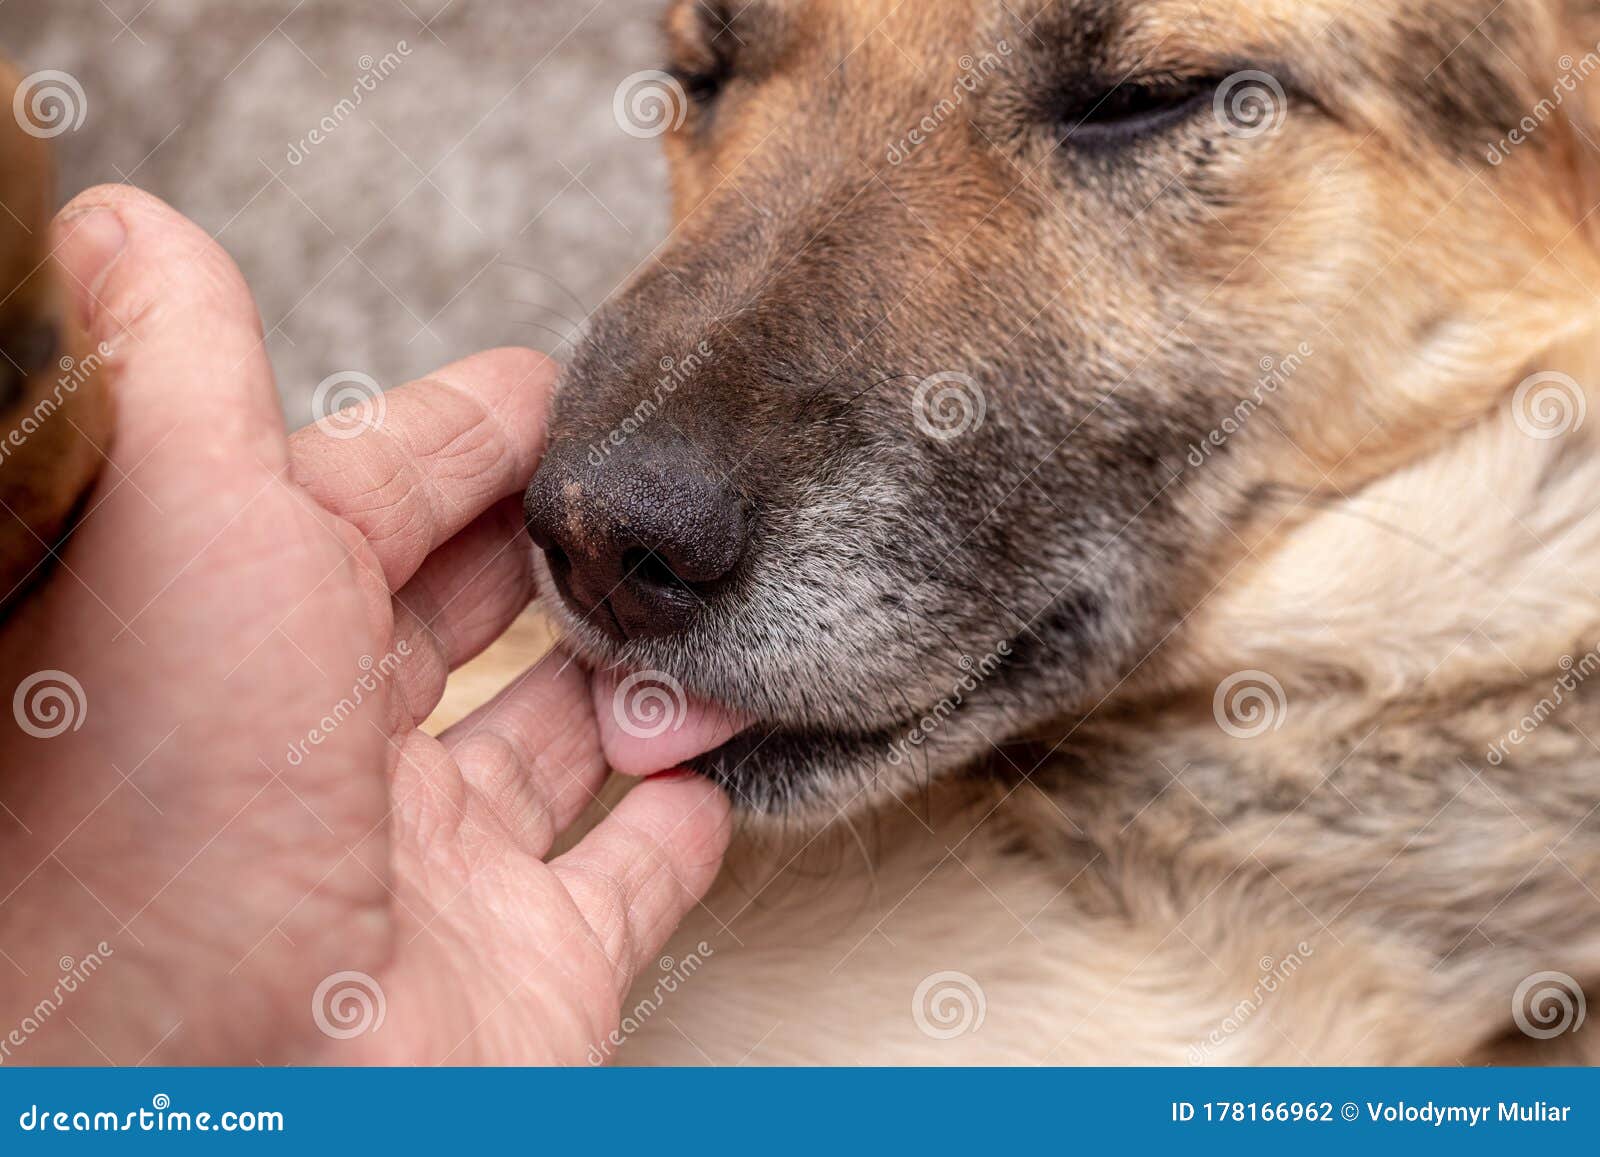 狗经常舔脚是因为爱干净吗？别想得太好，有可能是它生病了！